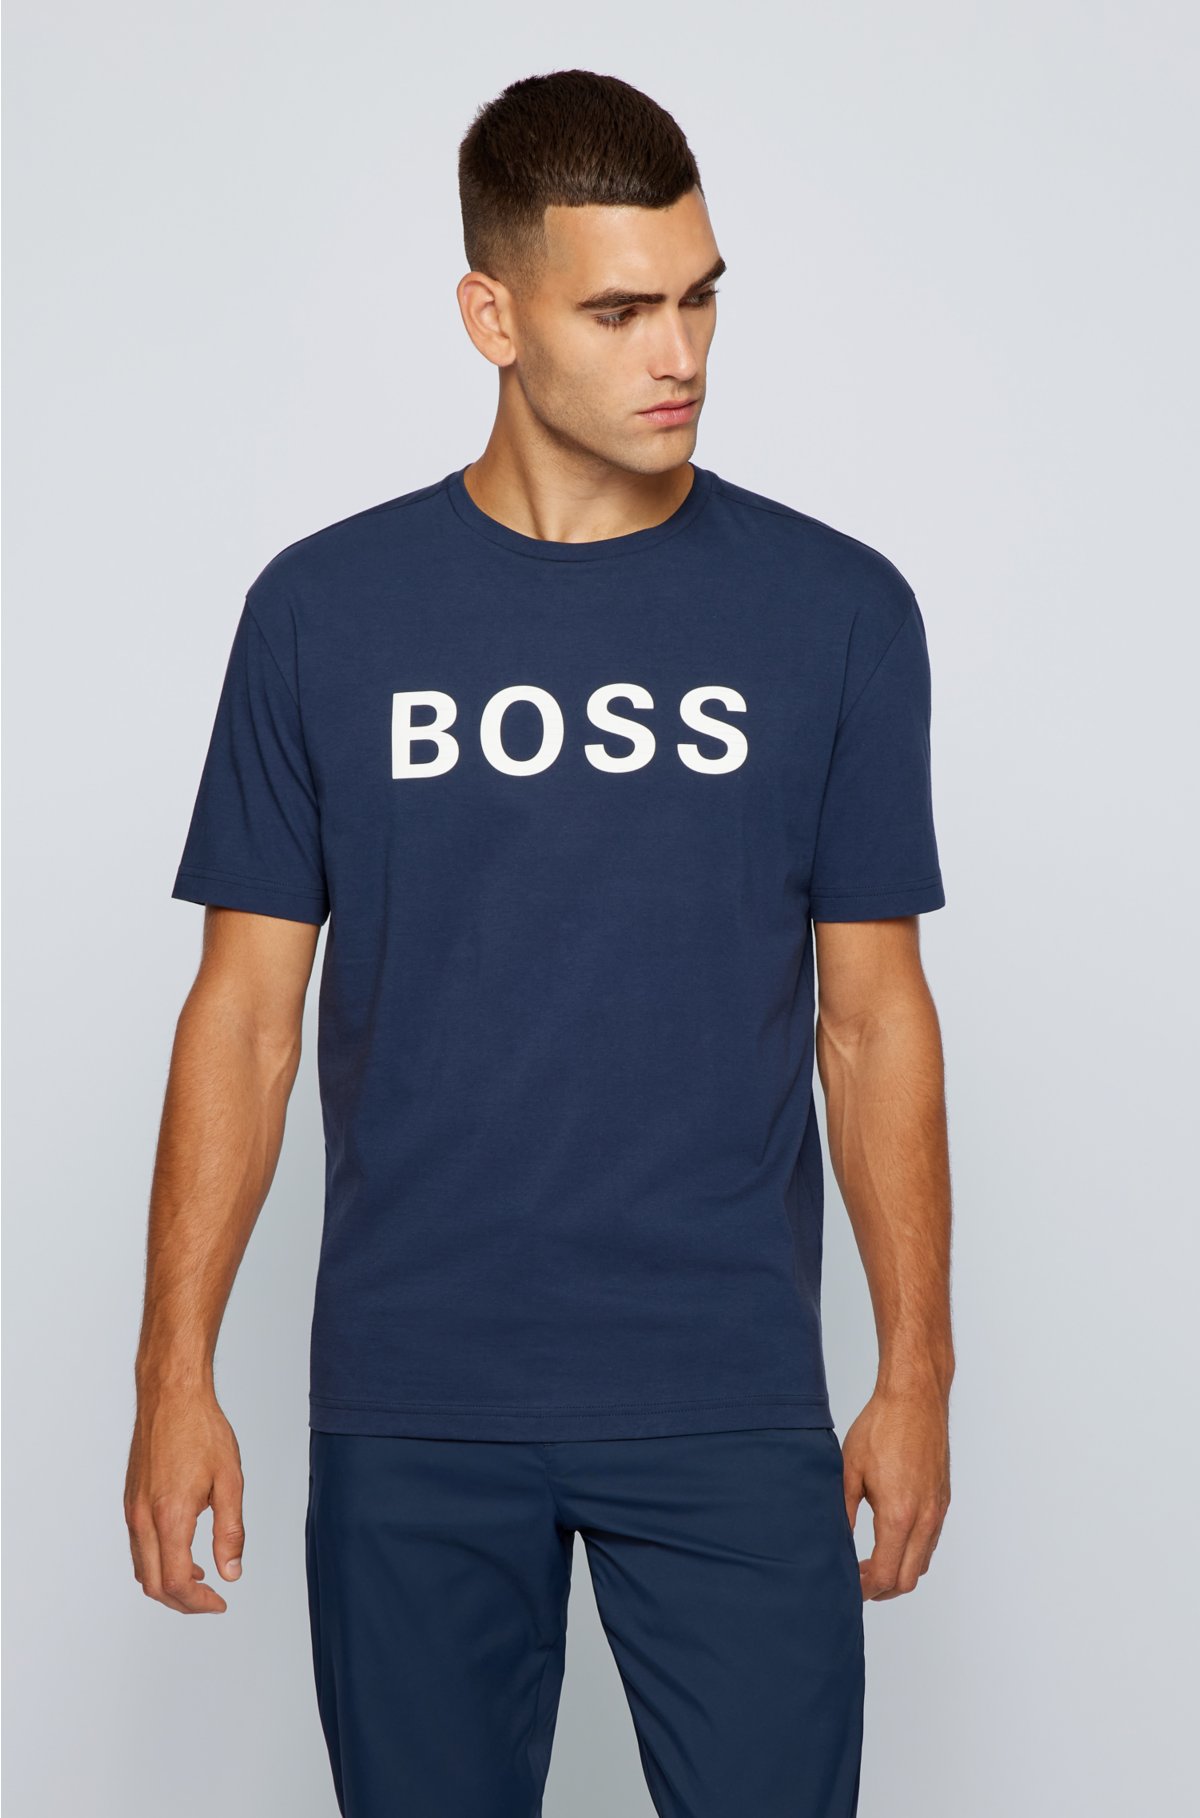 BOSS HUGO BOSS, Midnight blue Men's T-shirt